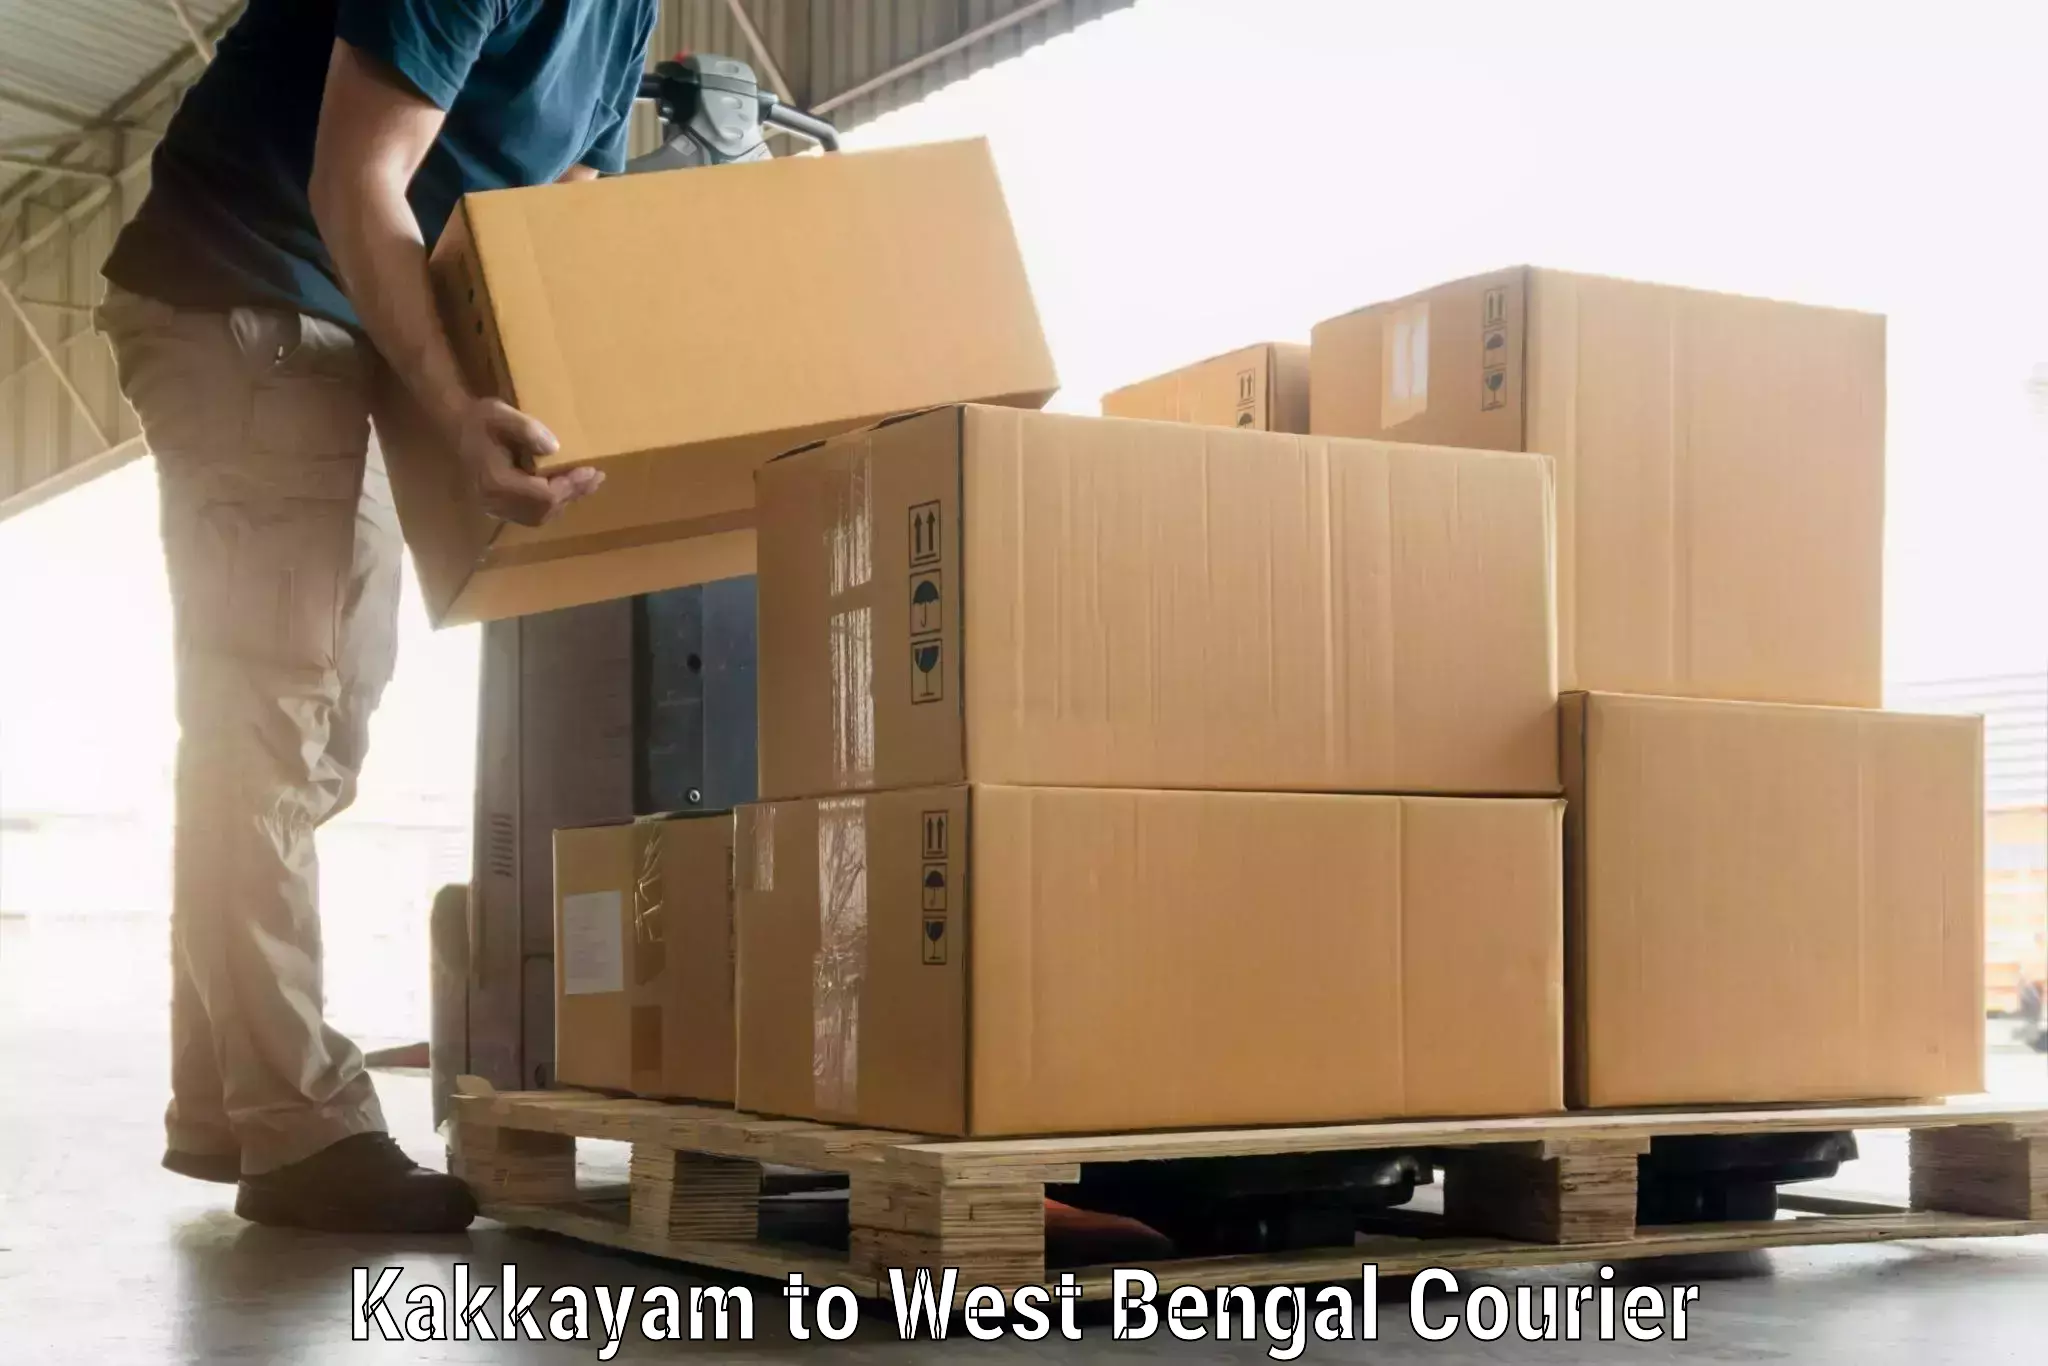 Luggage shipment specialists Kakkayam to West Bengal